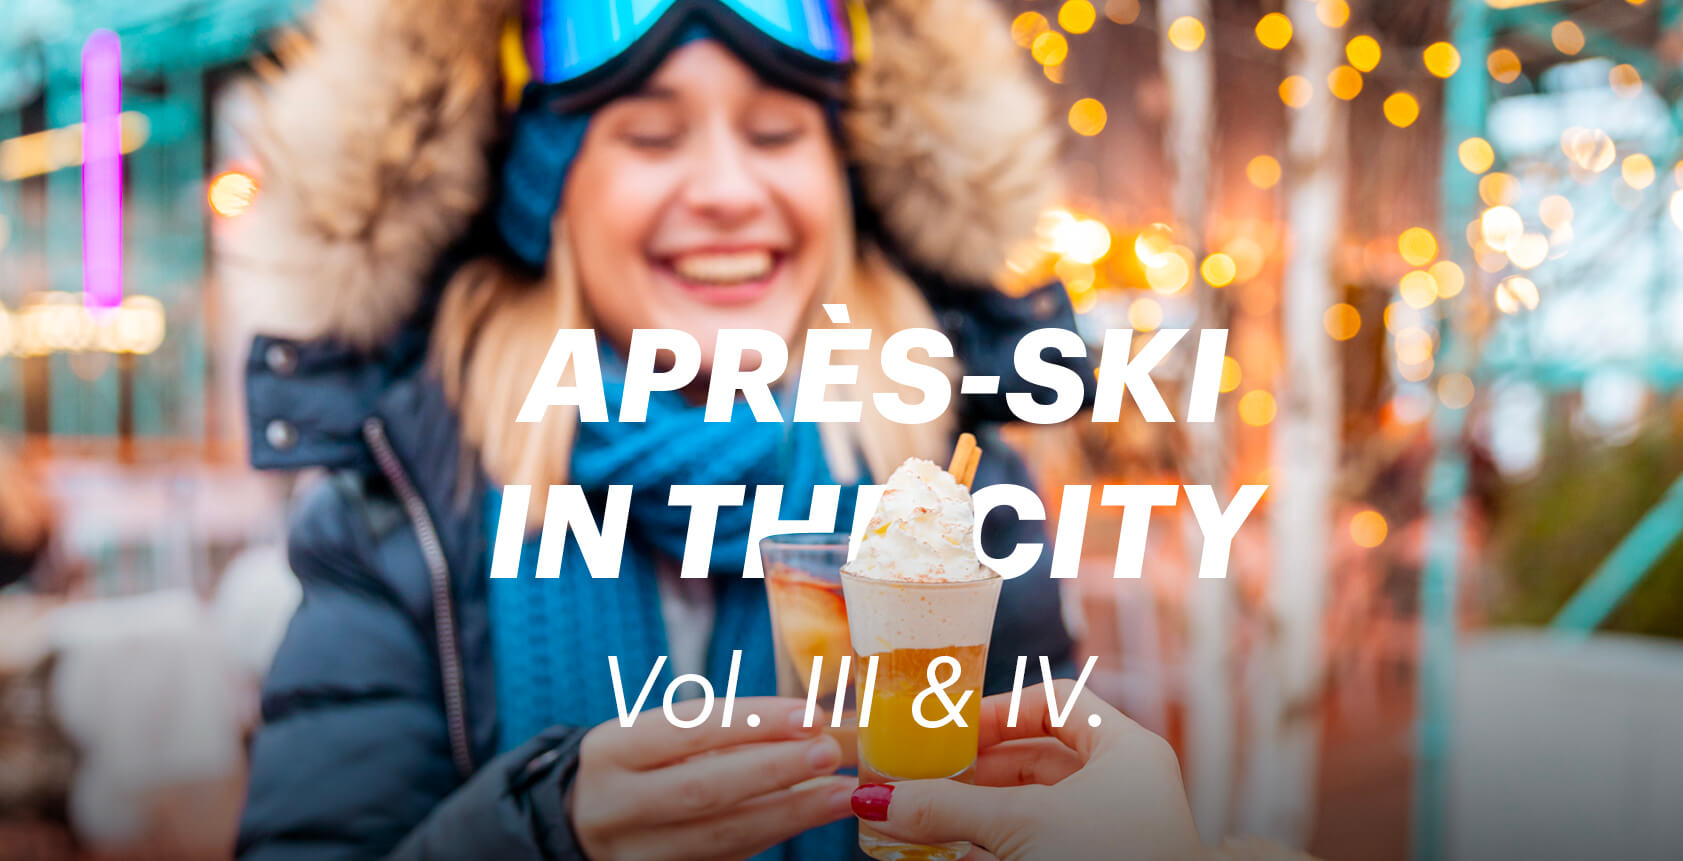 Apres-Ski in the City Vol.III & IV.